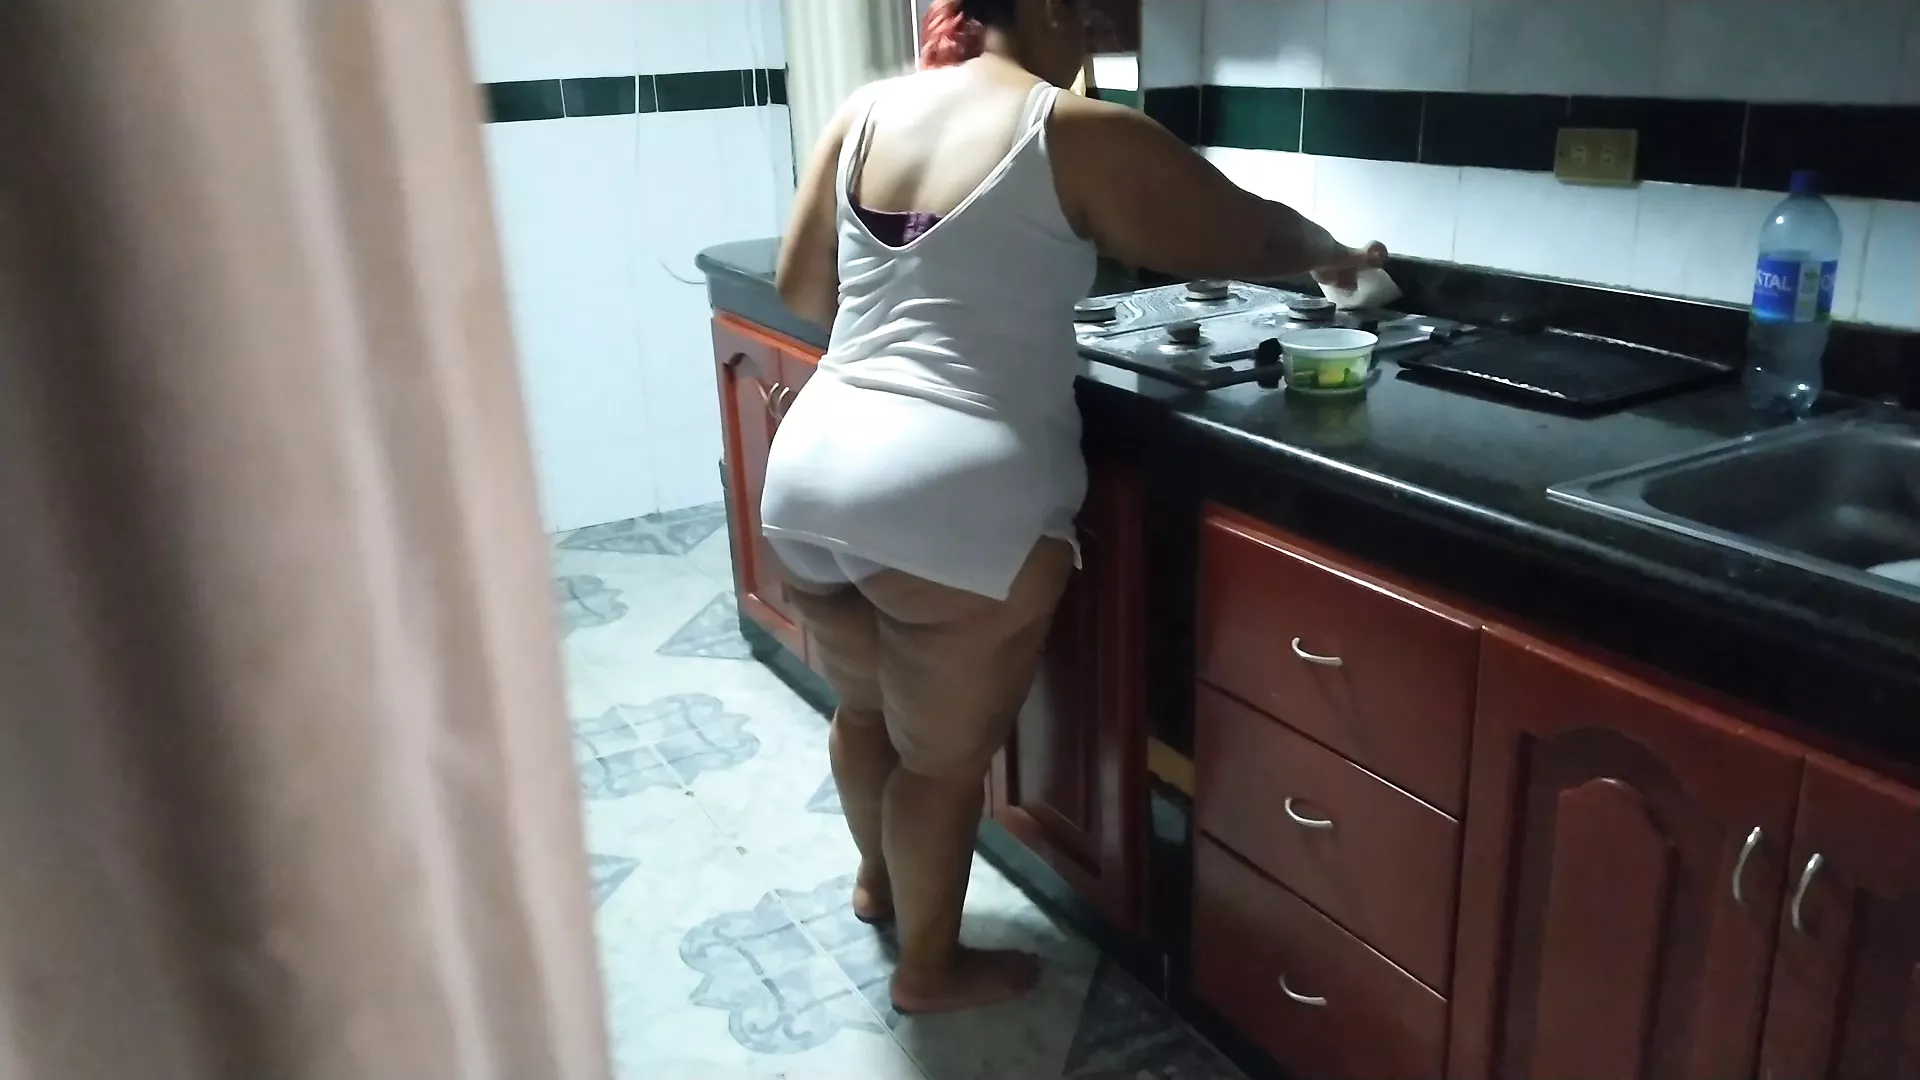 Mi masturbo mentre la mamma del mio amico pulisce la cucina xHamster